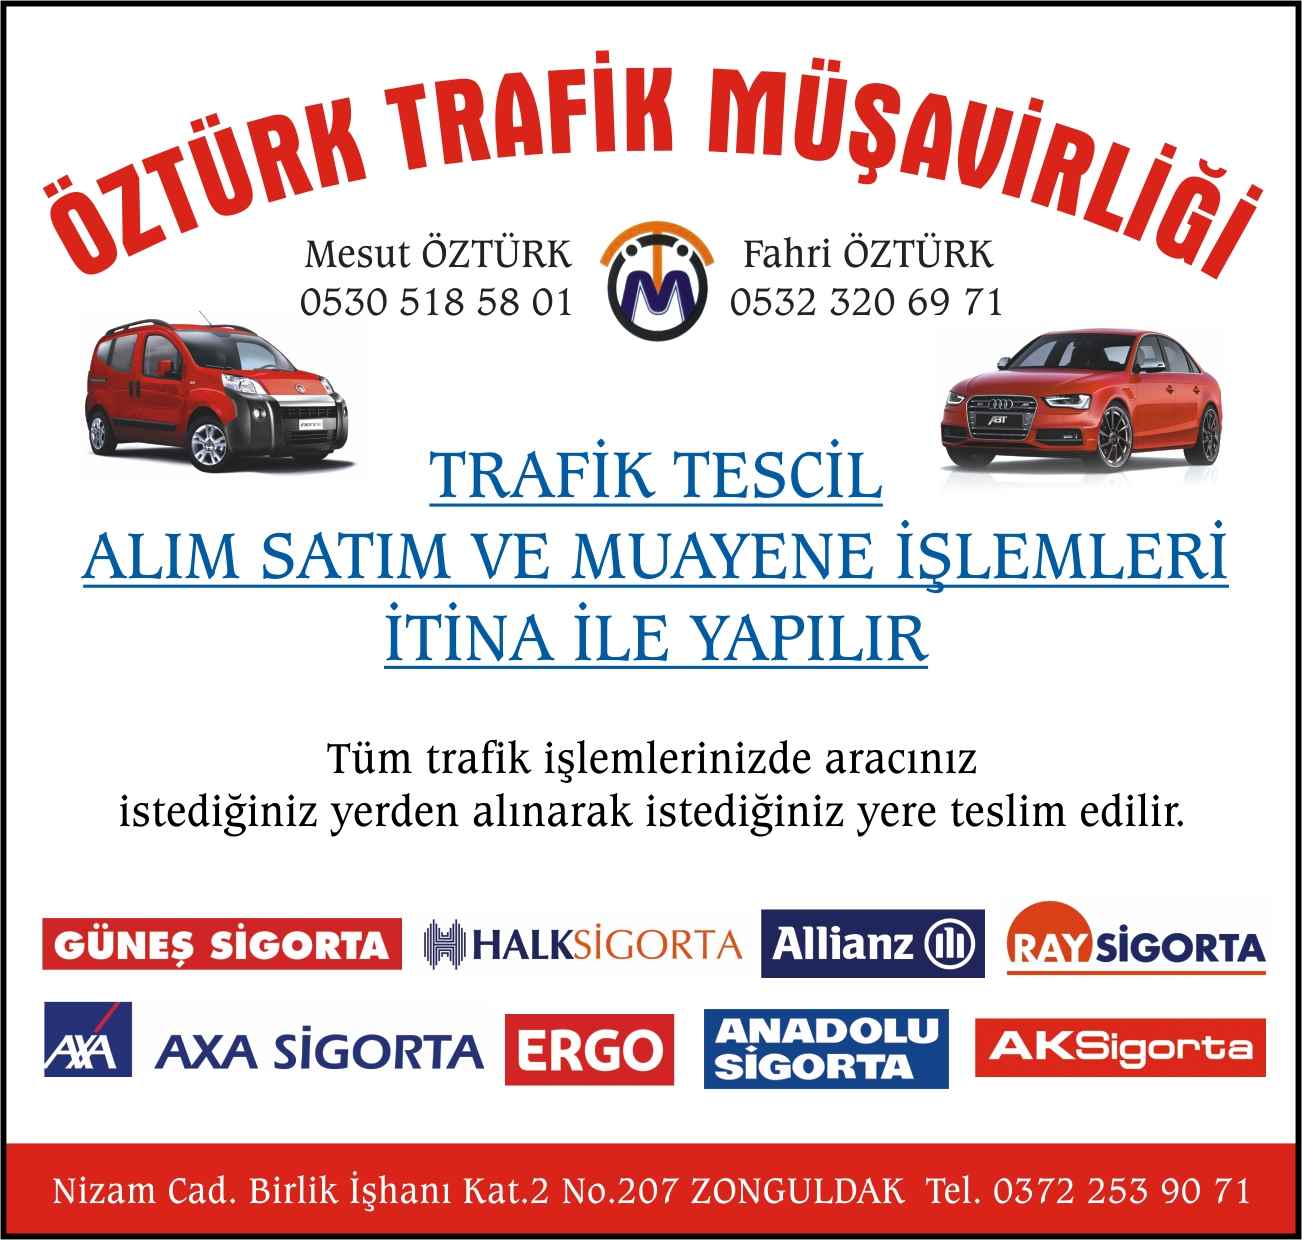 Öztürk Trafik Müşavirliği Zonguldak